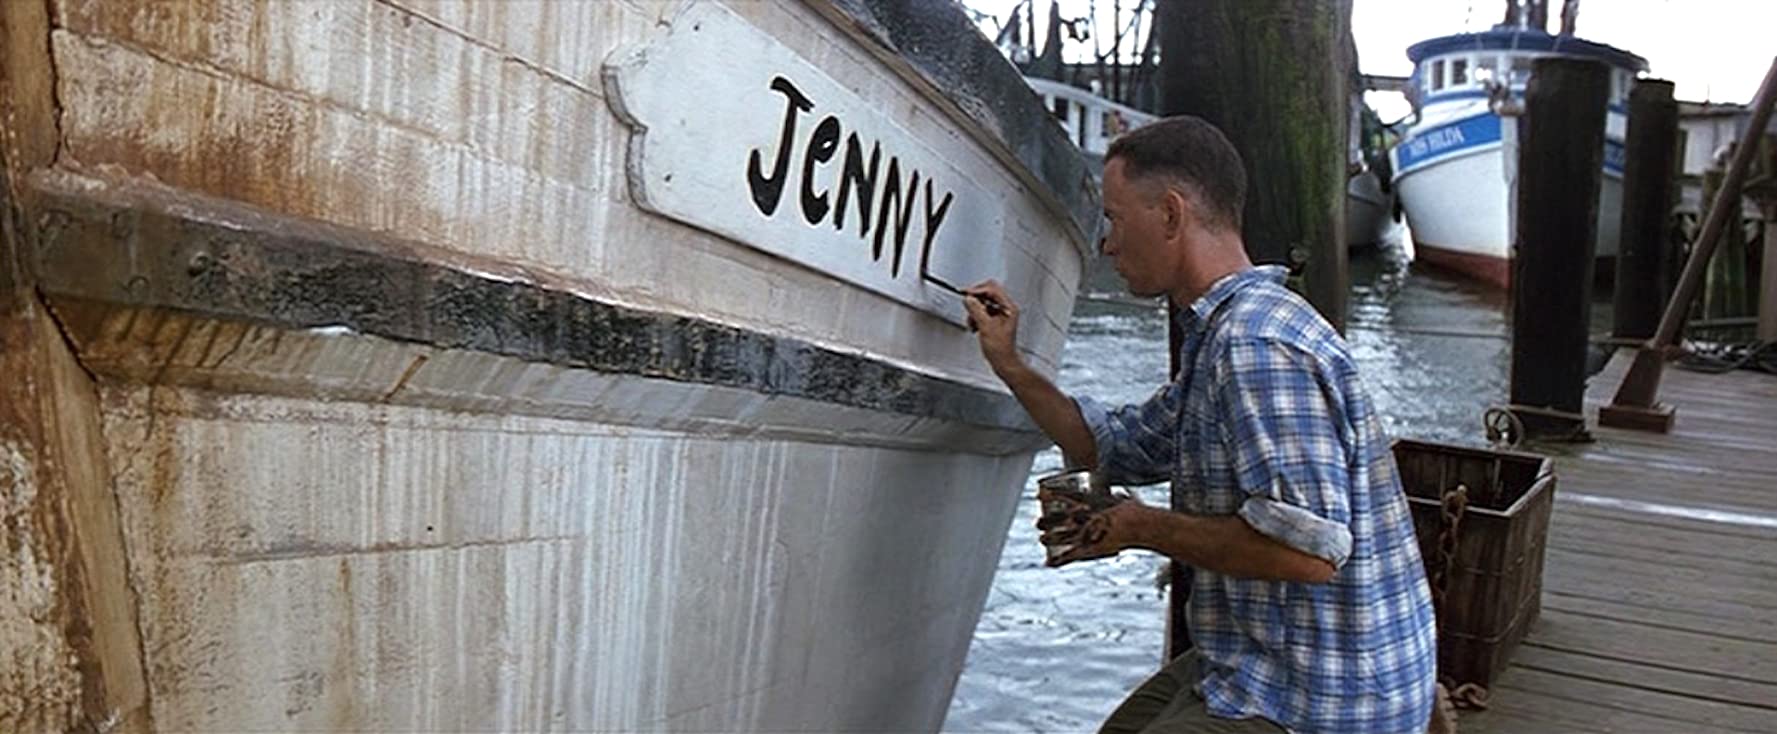 Forrest Gump : à la poursuite du chalutier "Jenny"